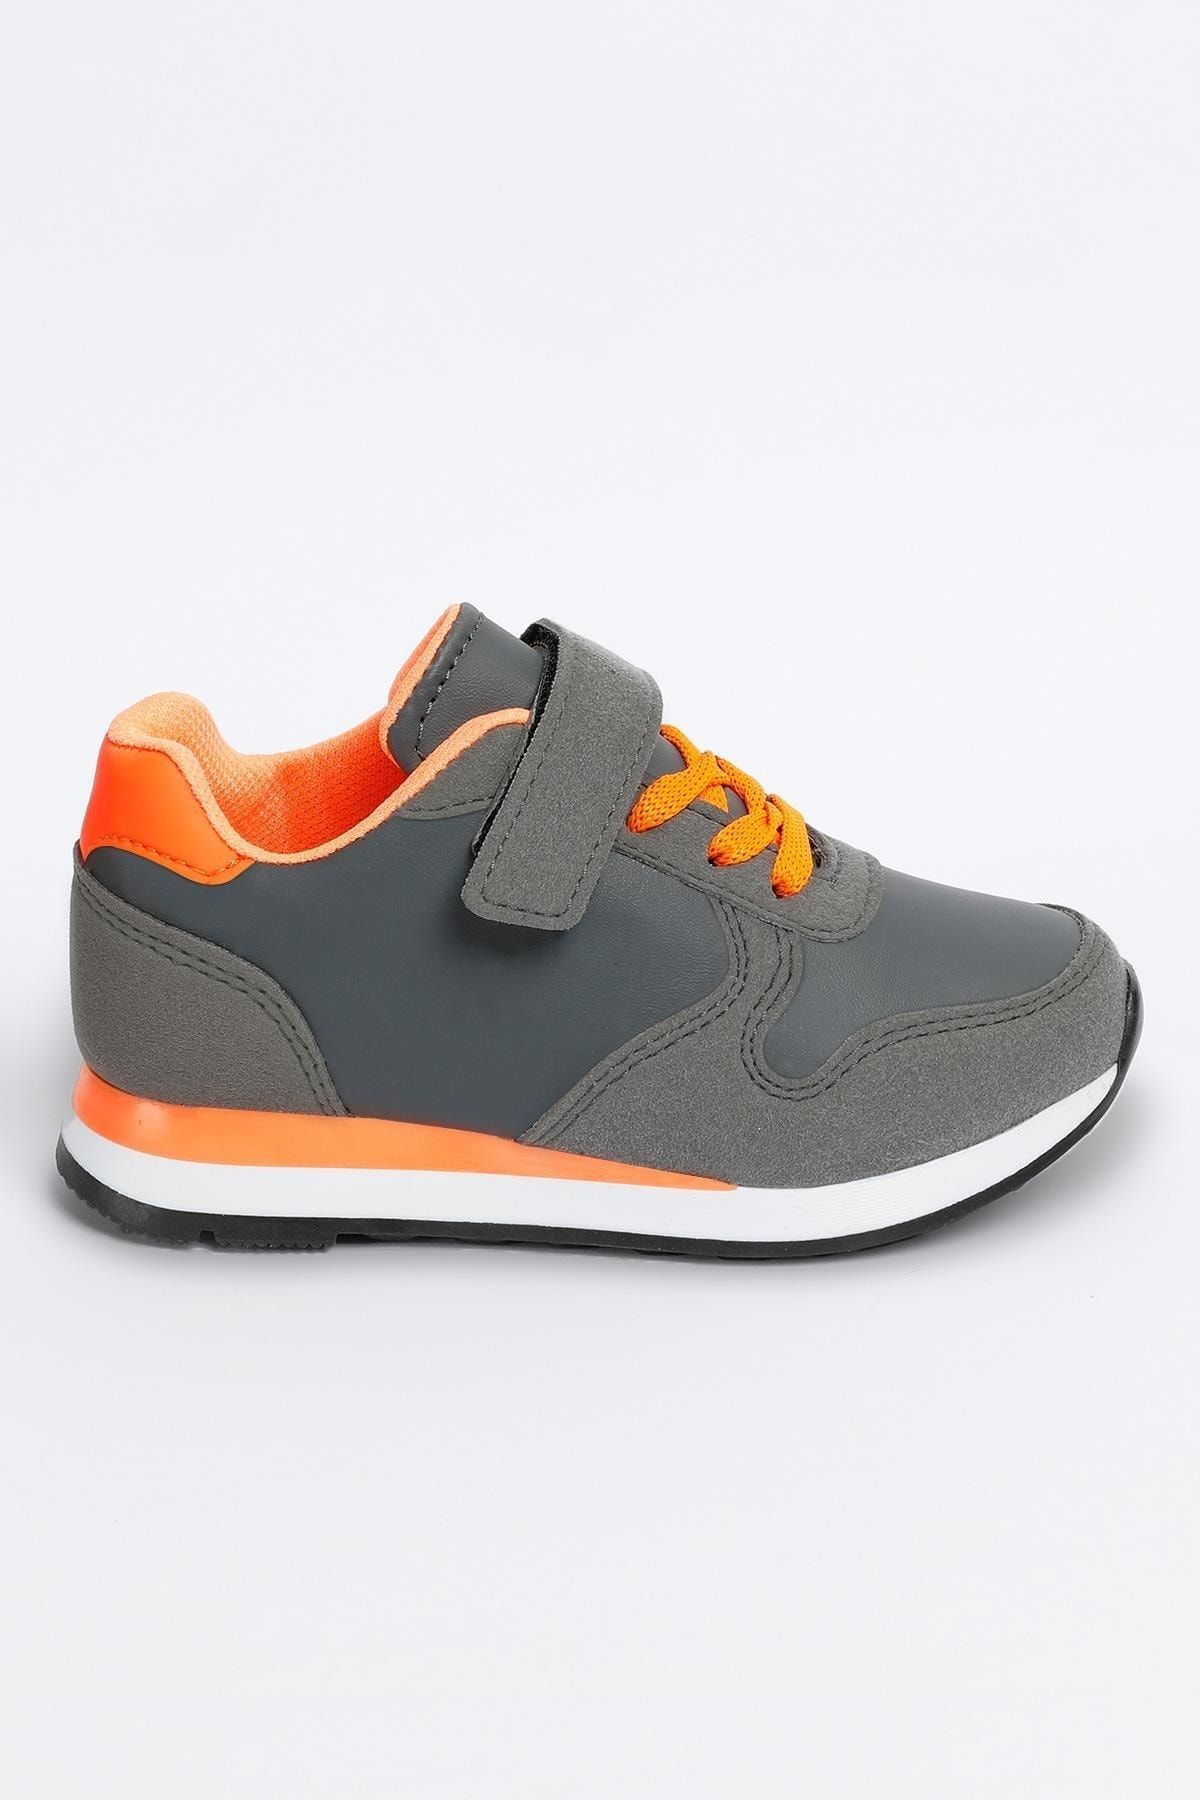 Walky - Vega Model Füme - Orange Unisex Çocuk Spor Sneaker Ayakkabı